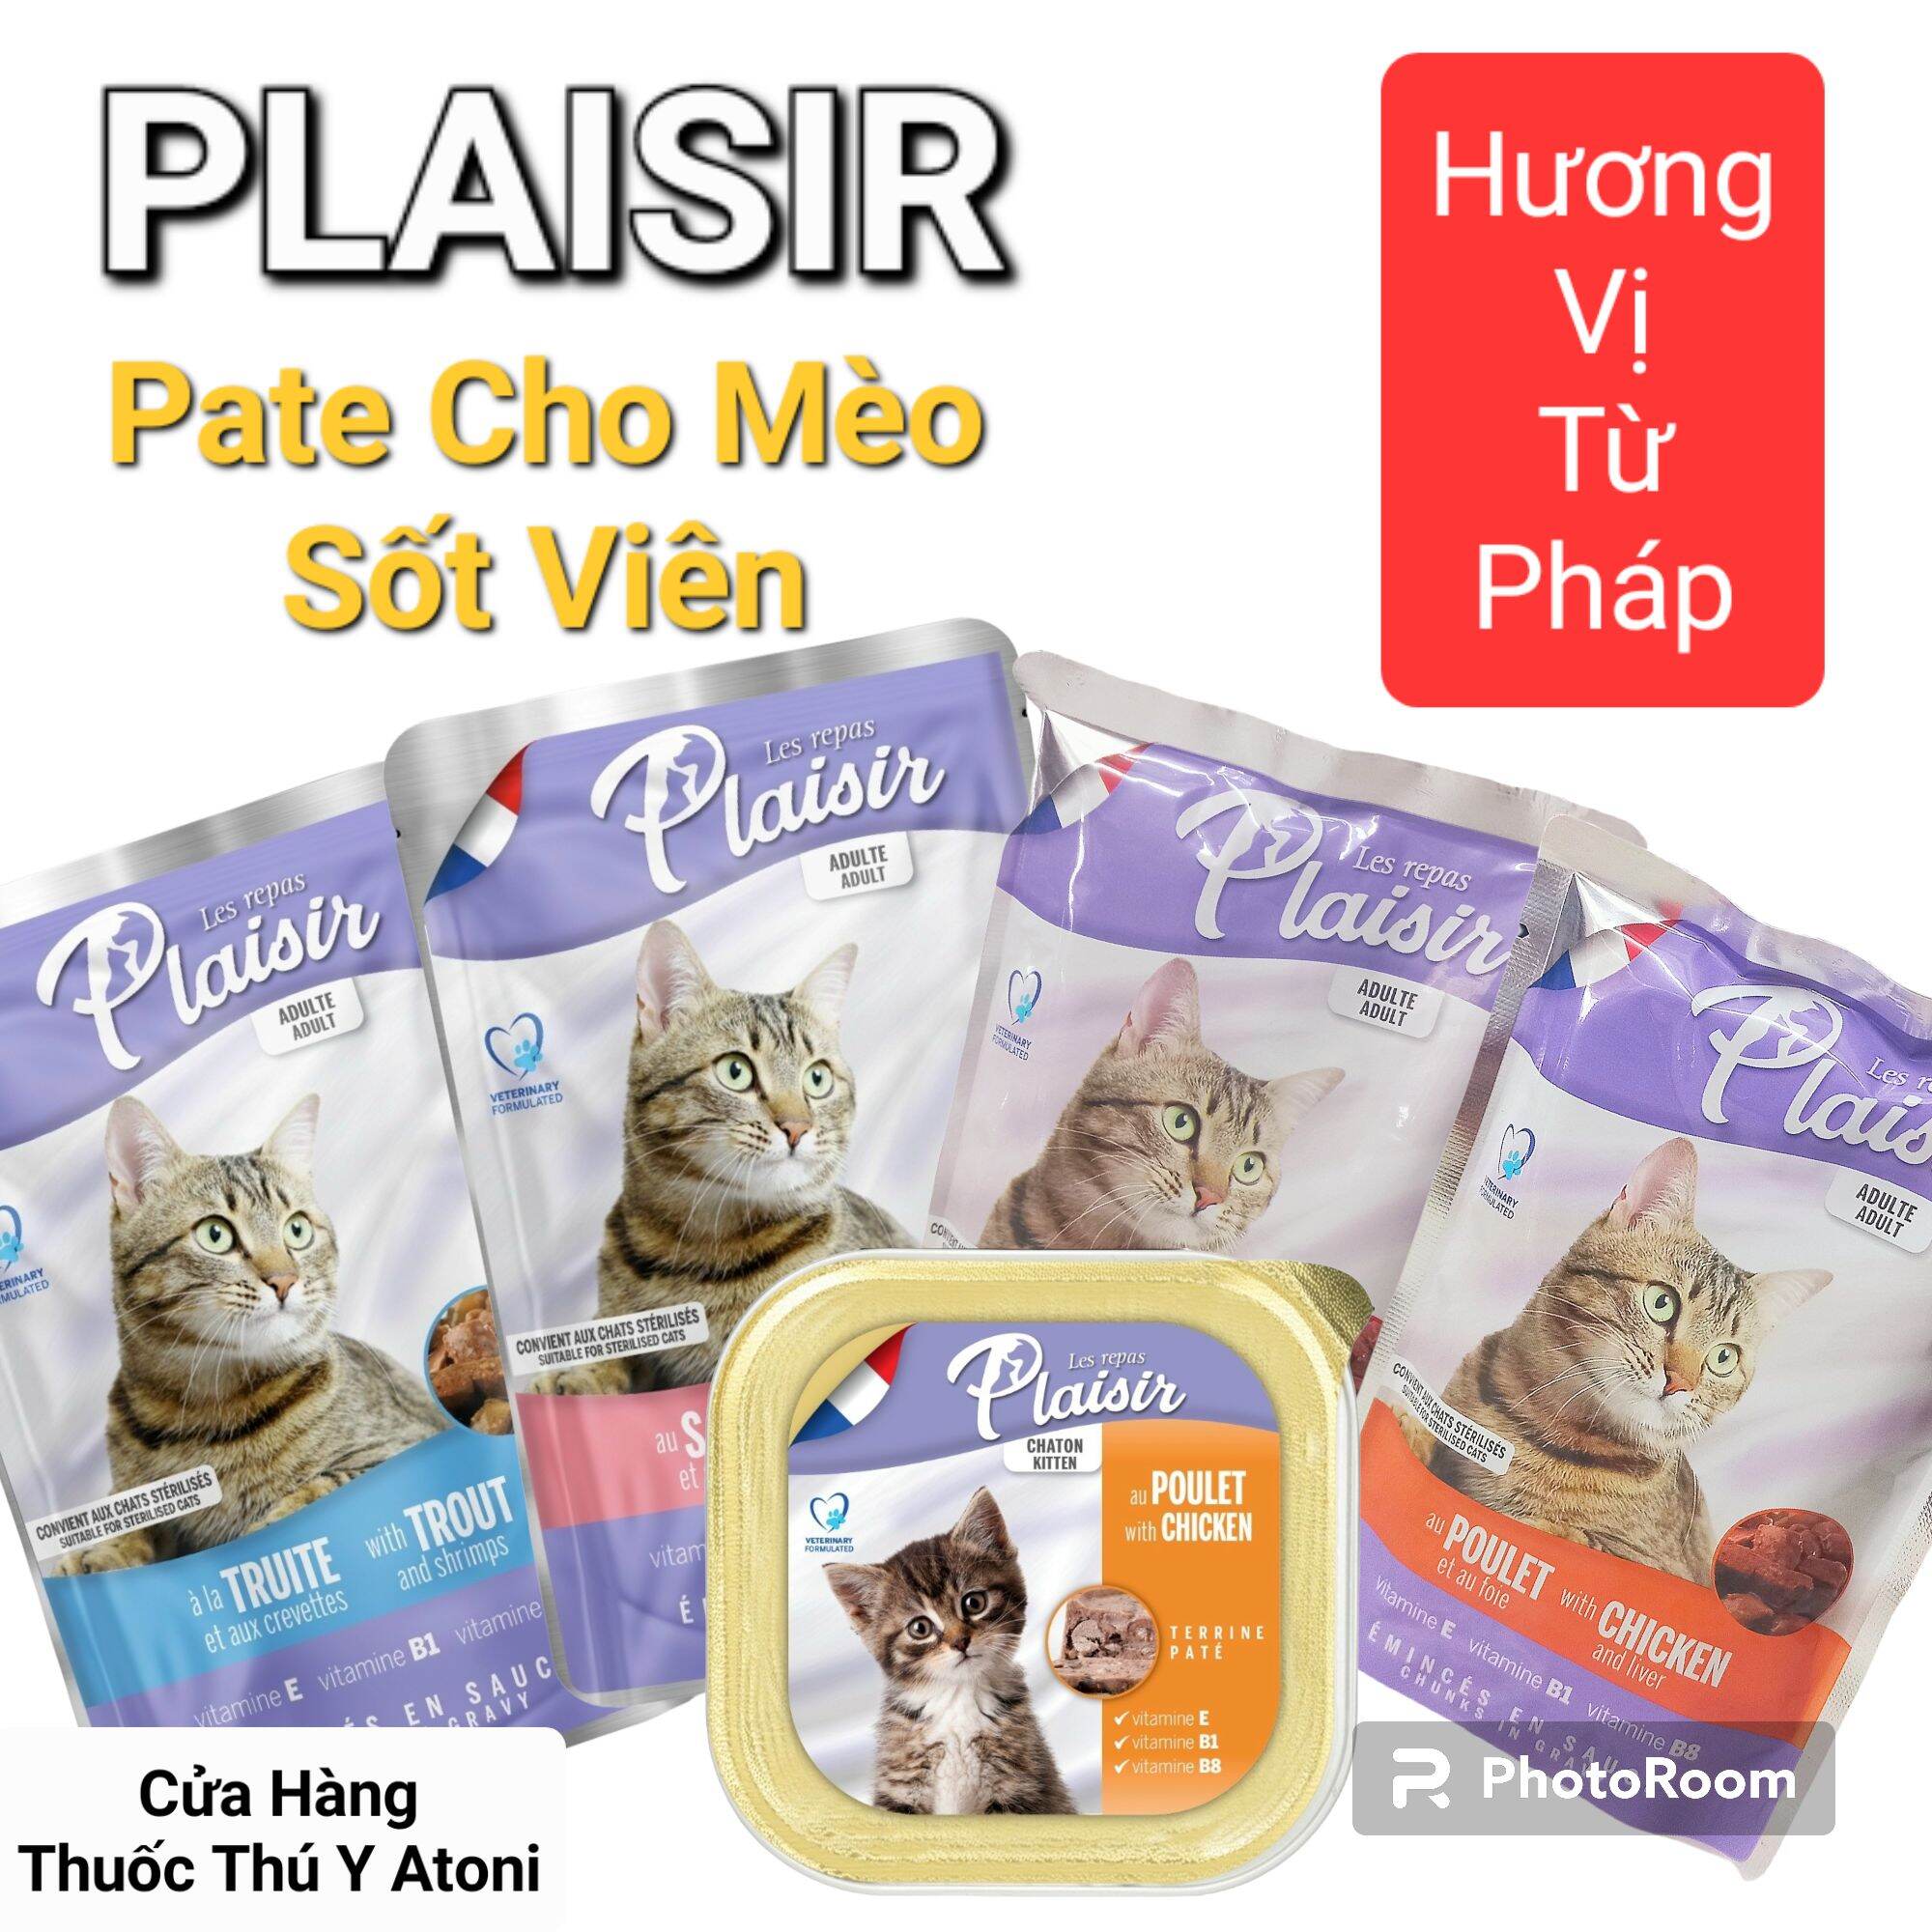 Gói 100g PLAISIR Pate Sốt Viên Dành Cho Mèo Xuất Xứ Pháp Mùi Vị Thơm Ngon